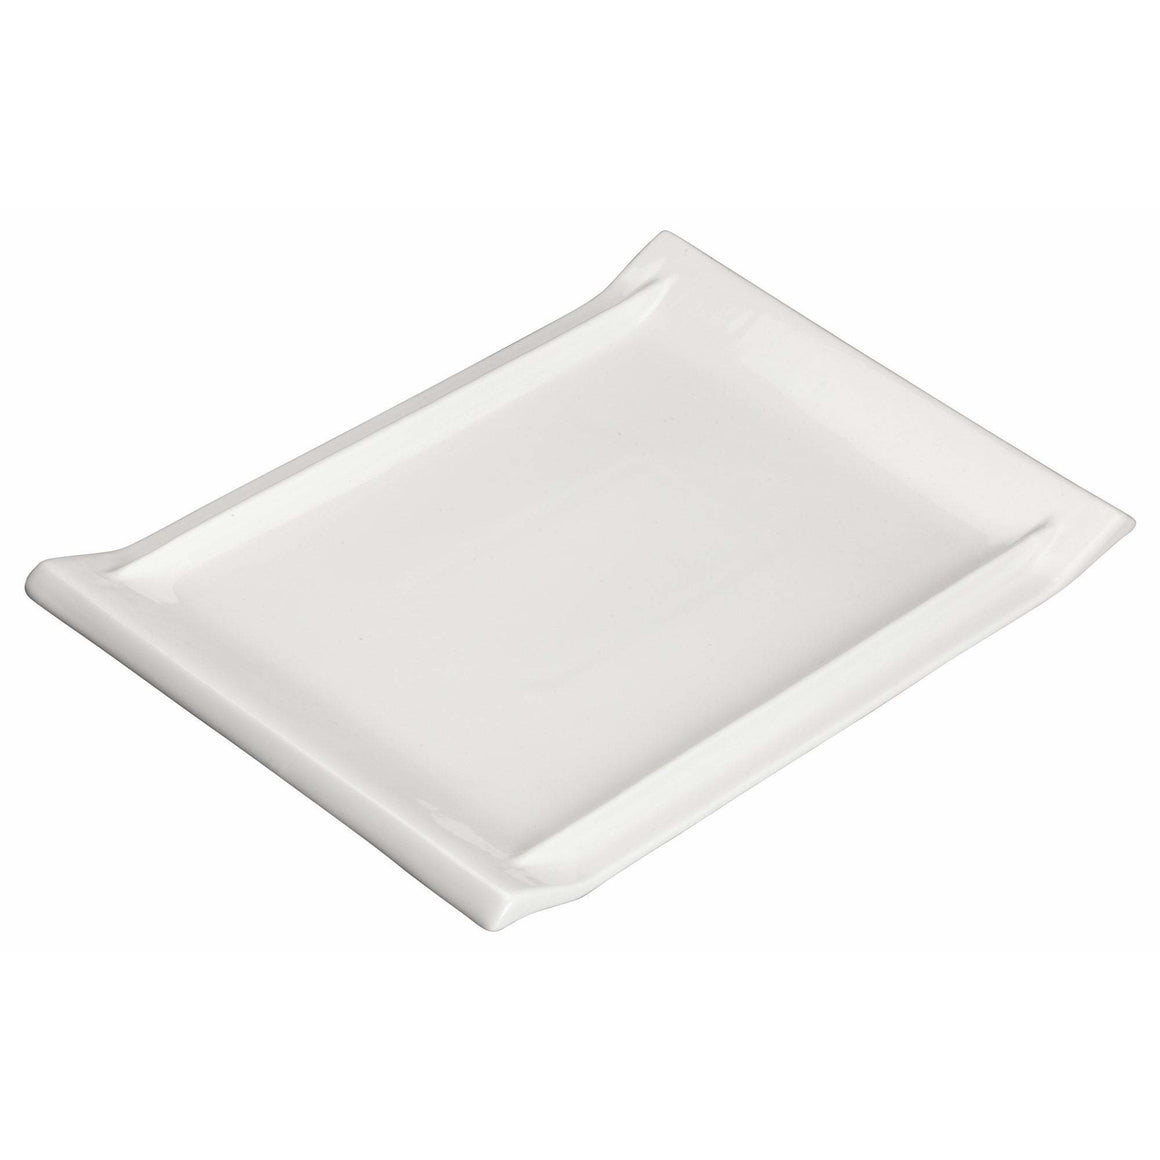 Winco - WDP017-111 - 10-1/8" x 7" Porcelain Rectangular Platter, Bright White, 24 pcs/case - Dinnerware - Maltese & Co New and Used  restaurant Equipment 